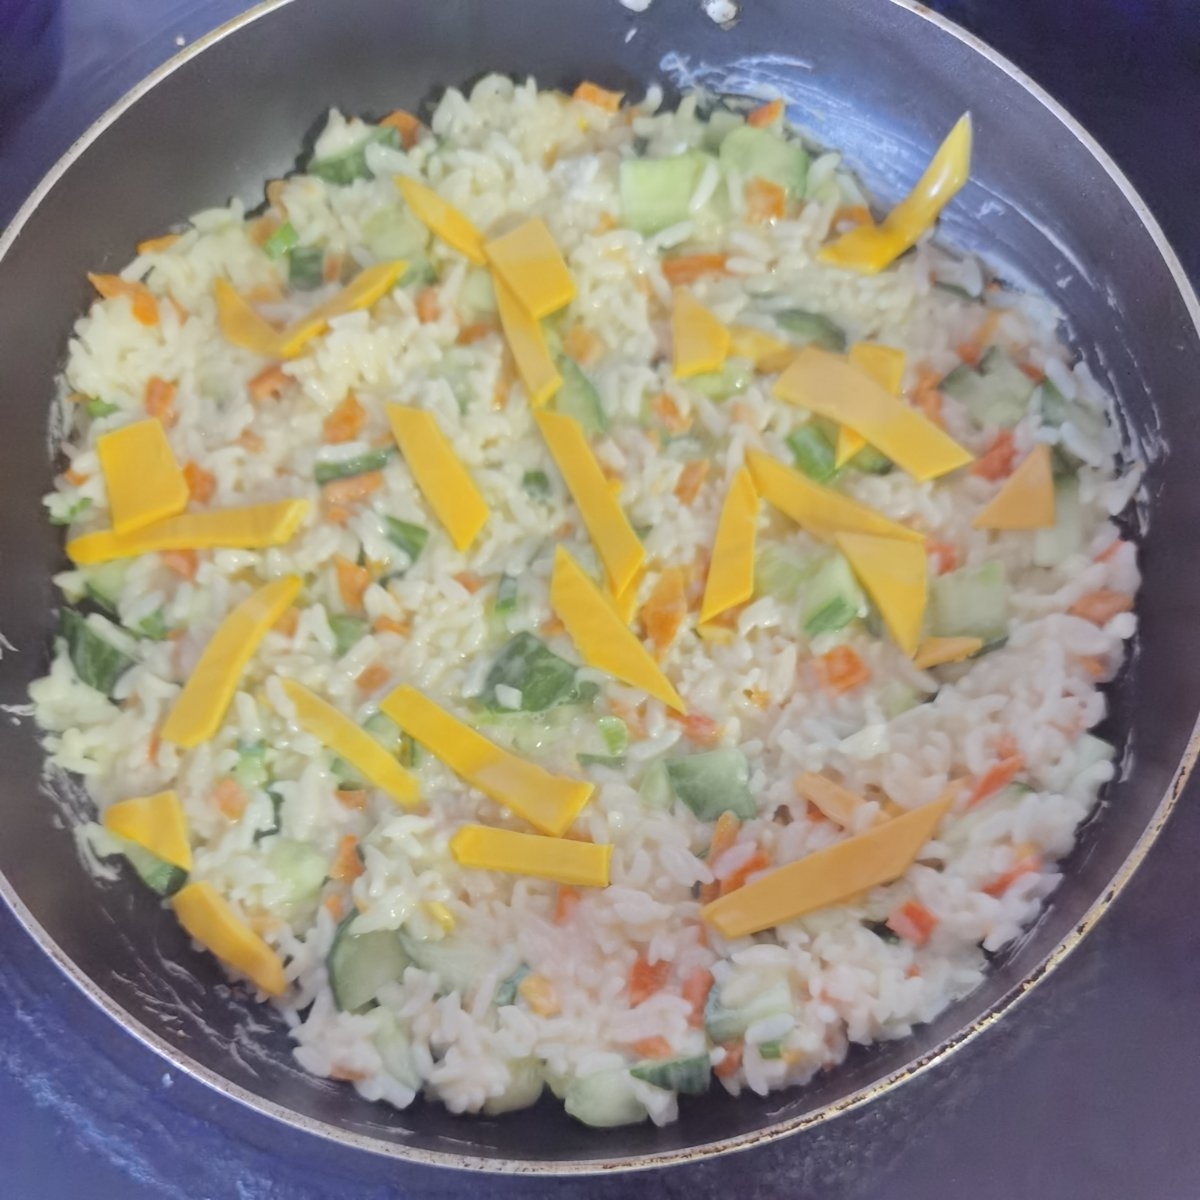 剩米饭的巧处理